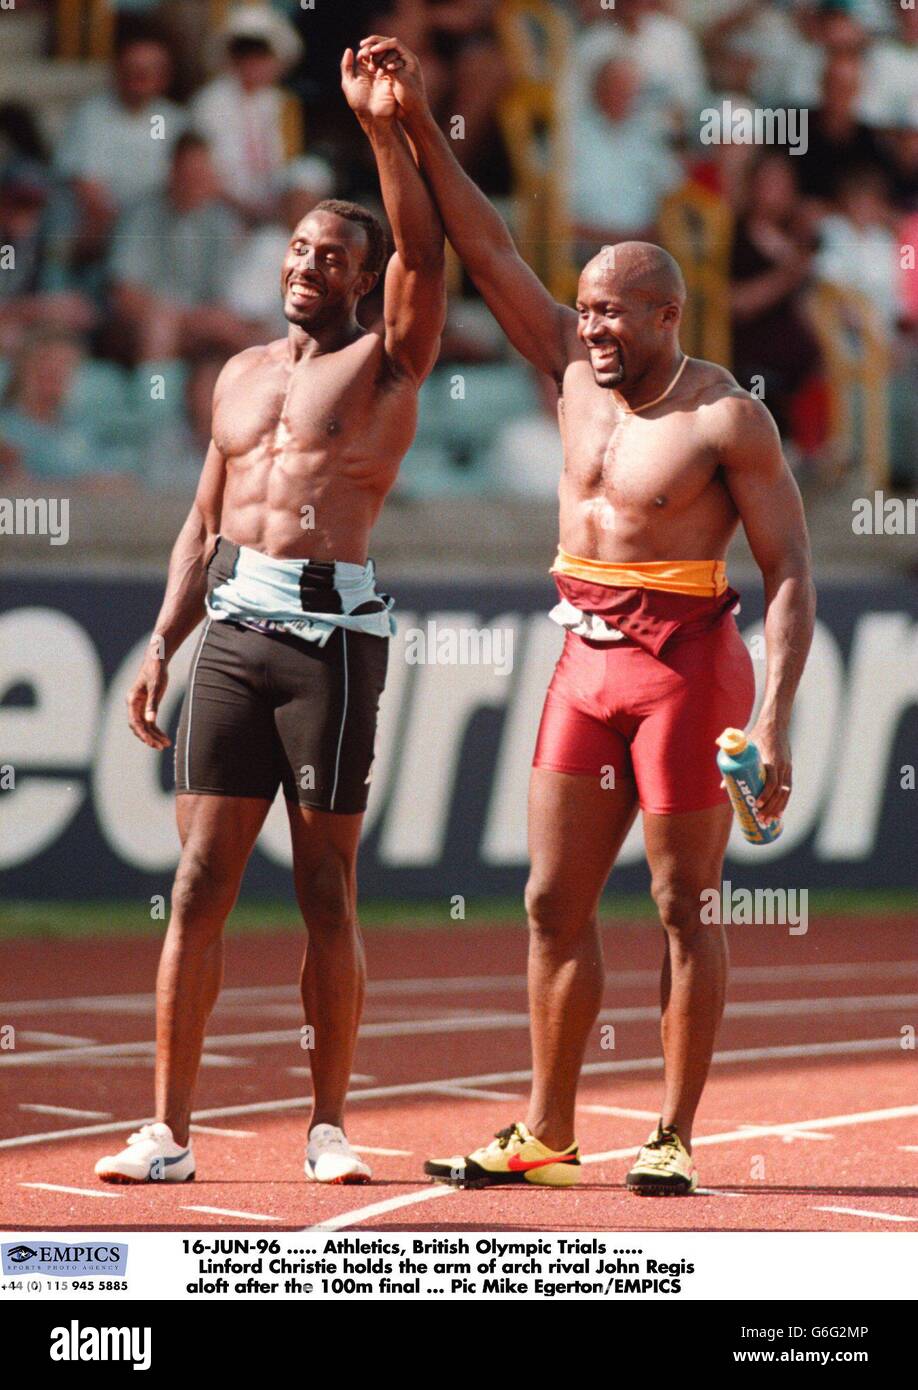 Athletics, British Olympic Trials, Birmingham Stock Photo